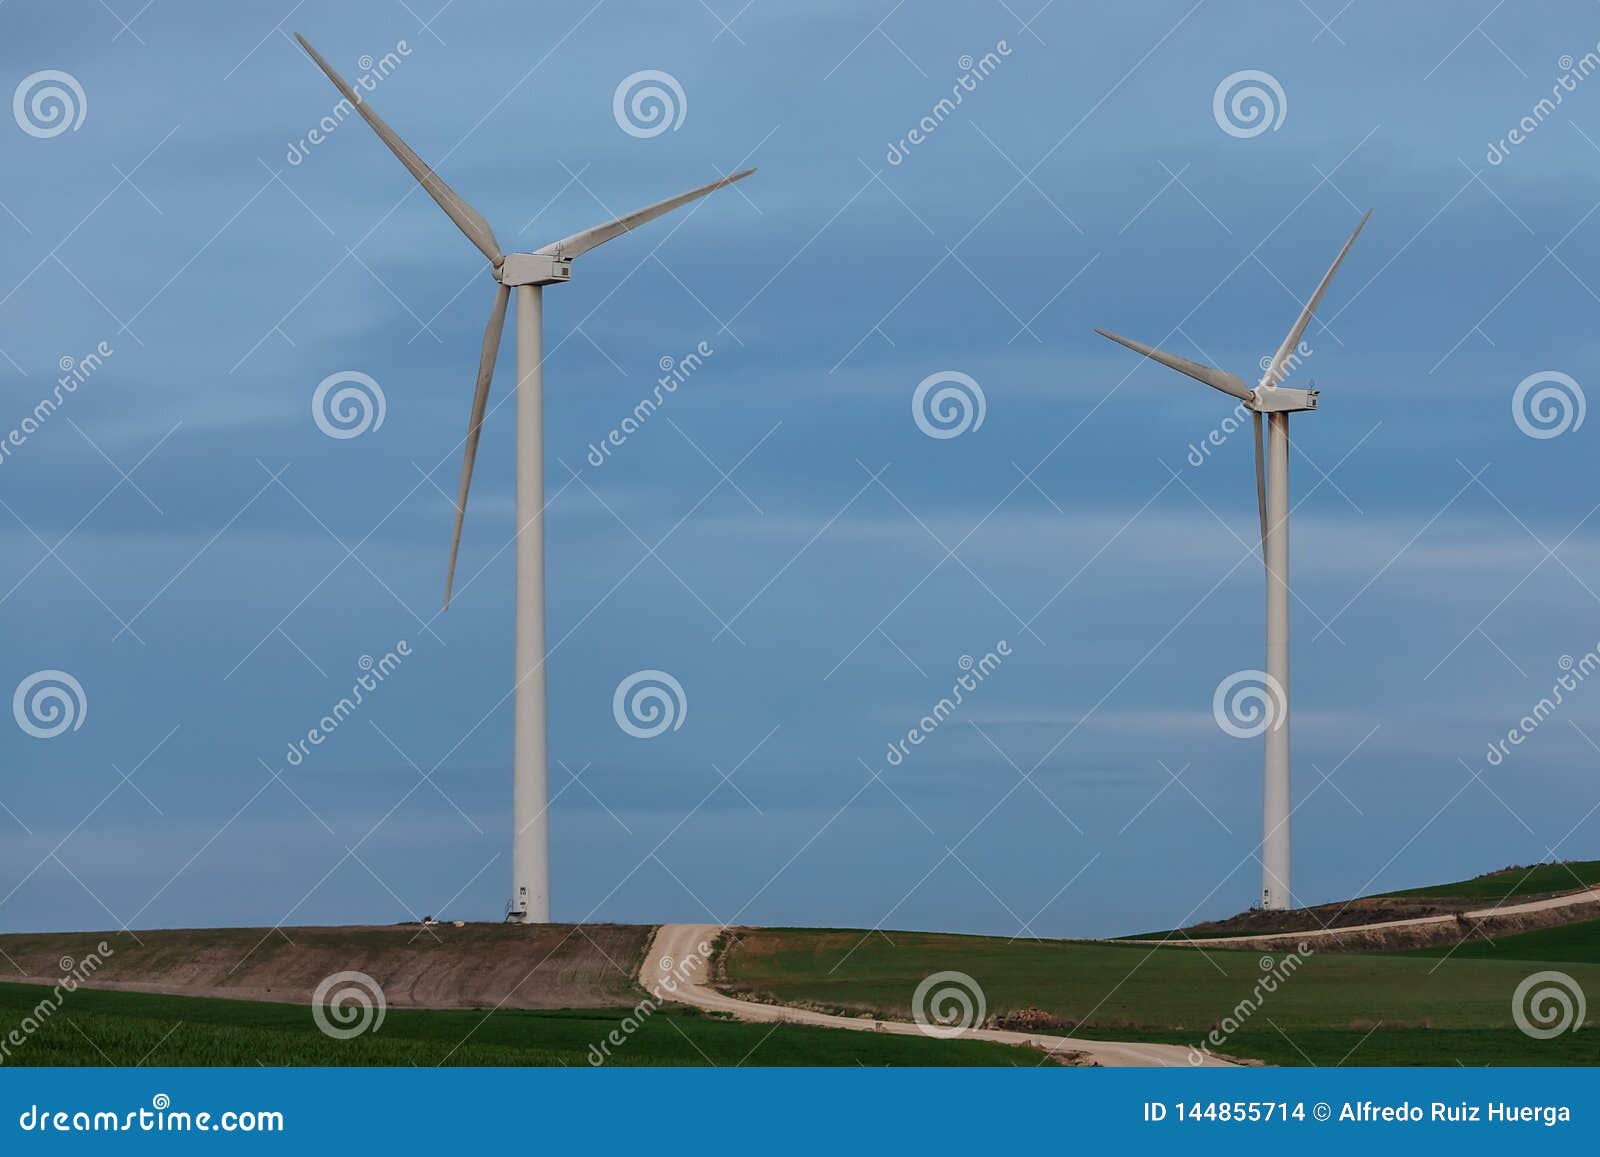 windmill, windfarm at la brujula in burgos